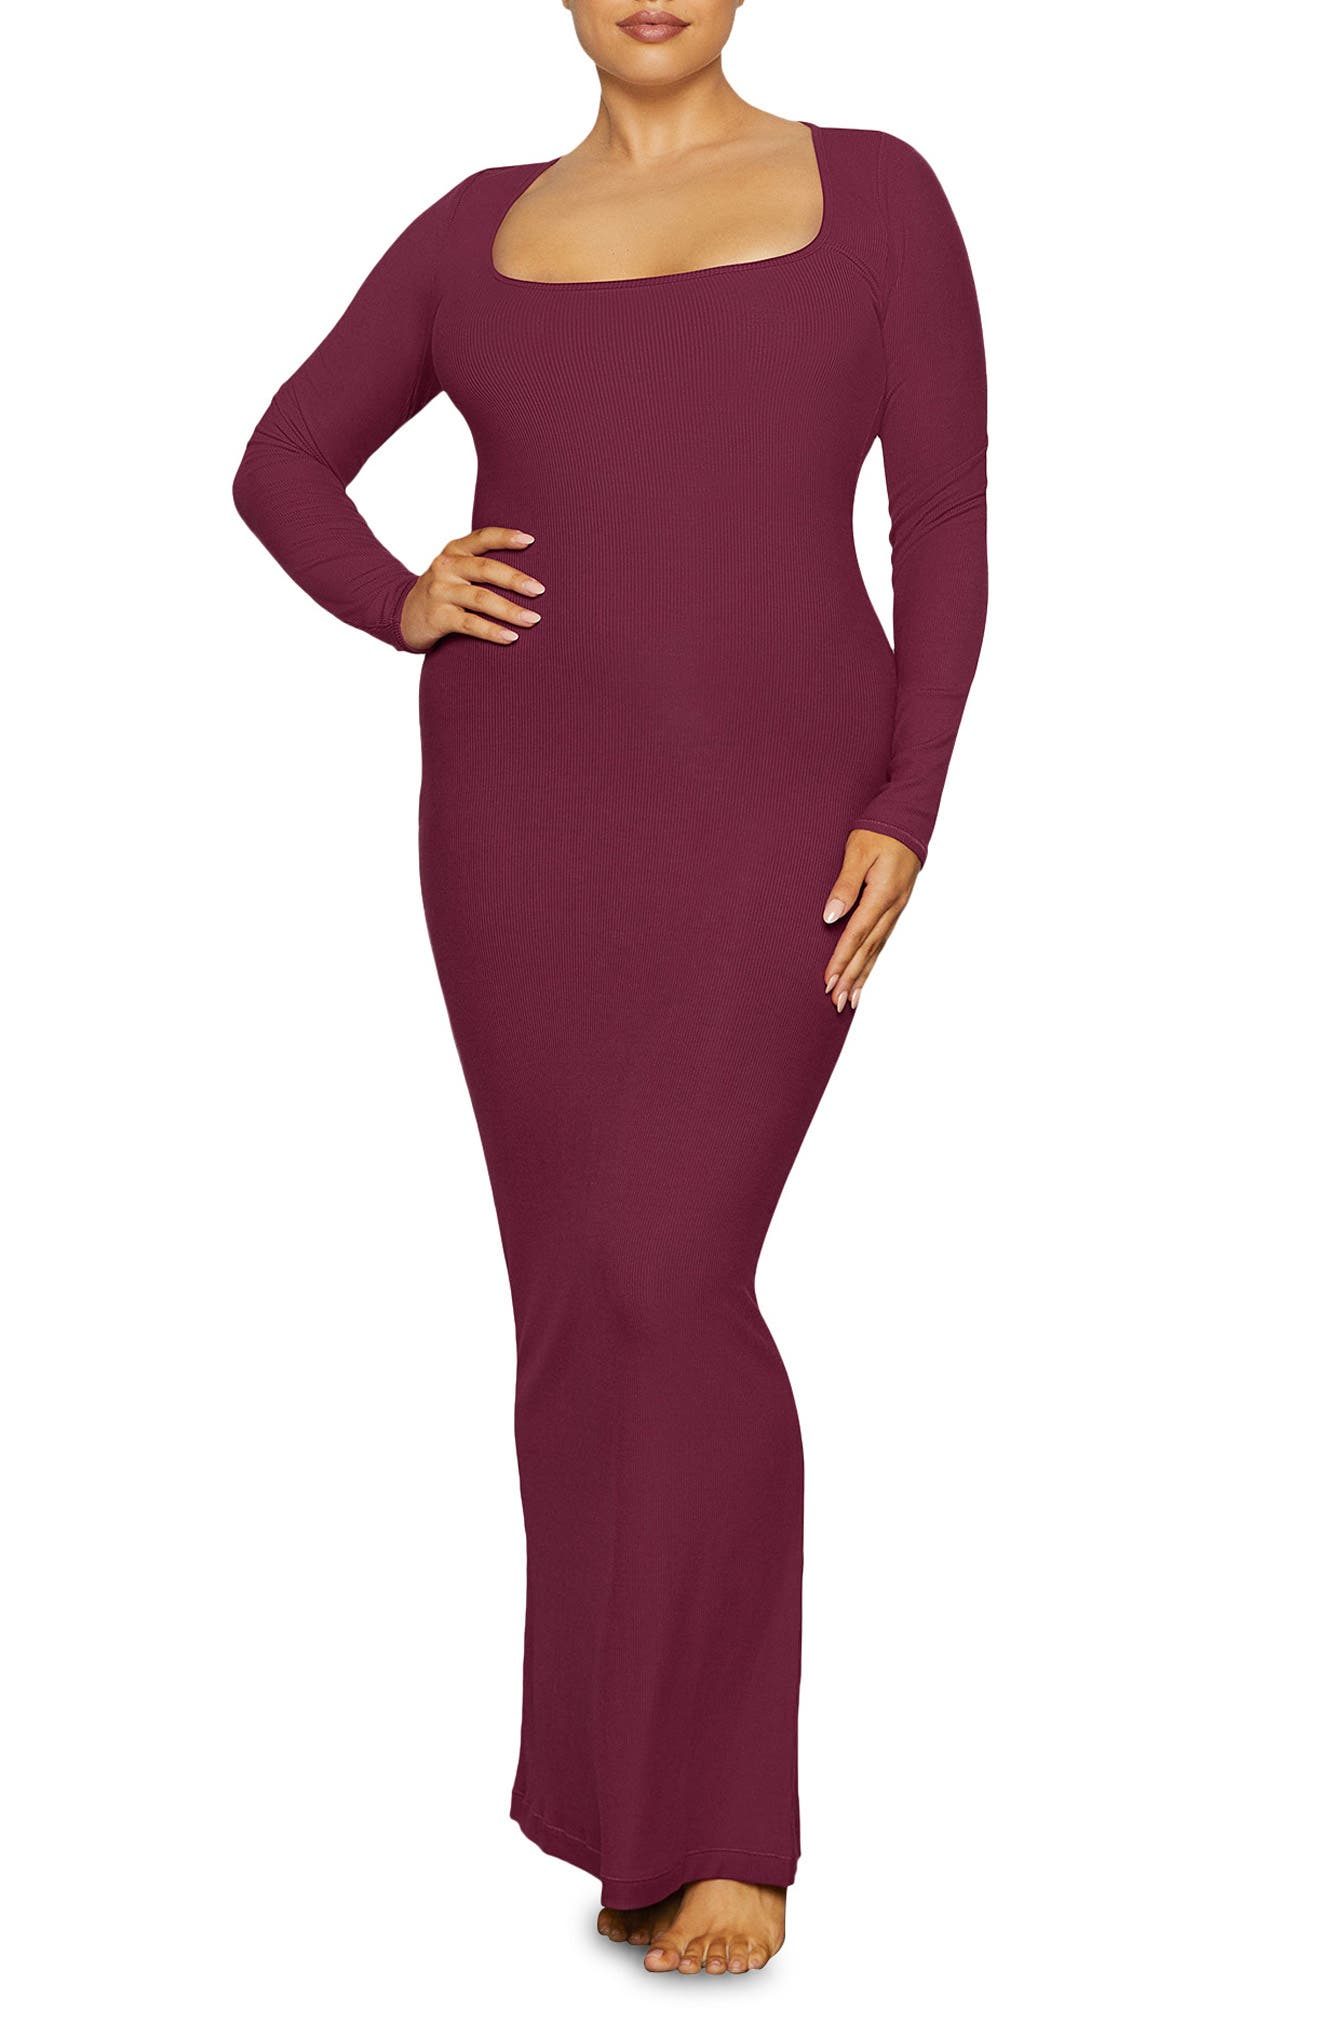 Kim Kardashian's SKIMS Cocoa Shimmer Tank Long Dress